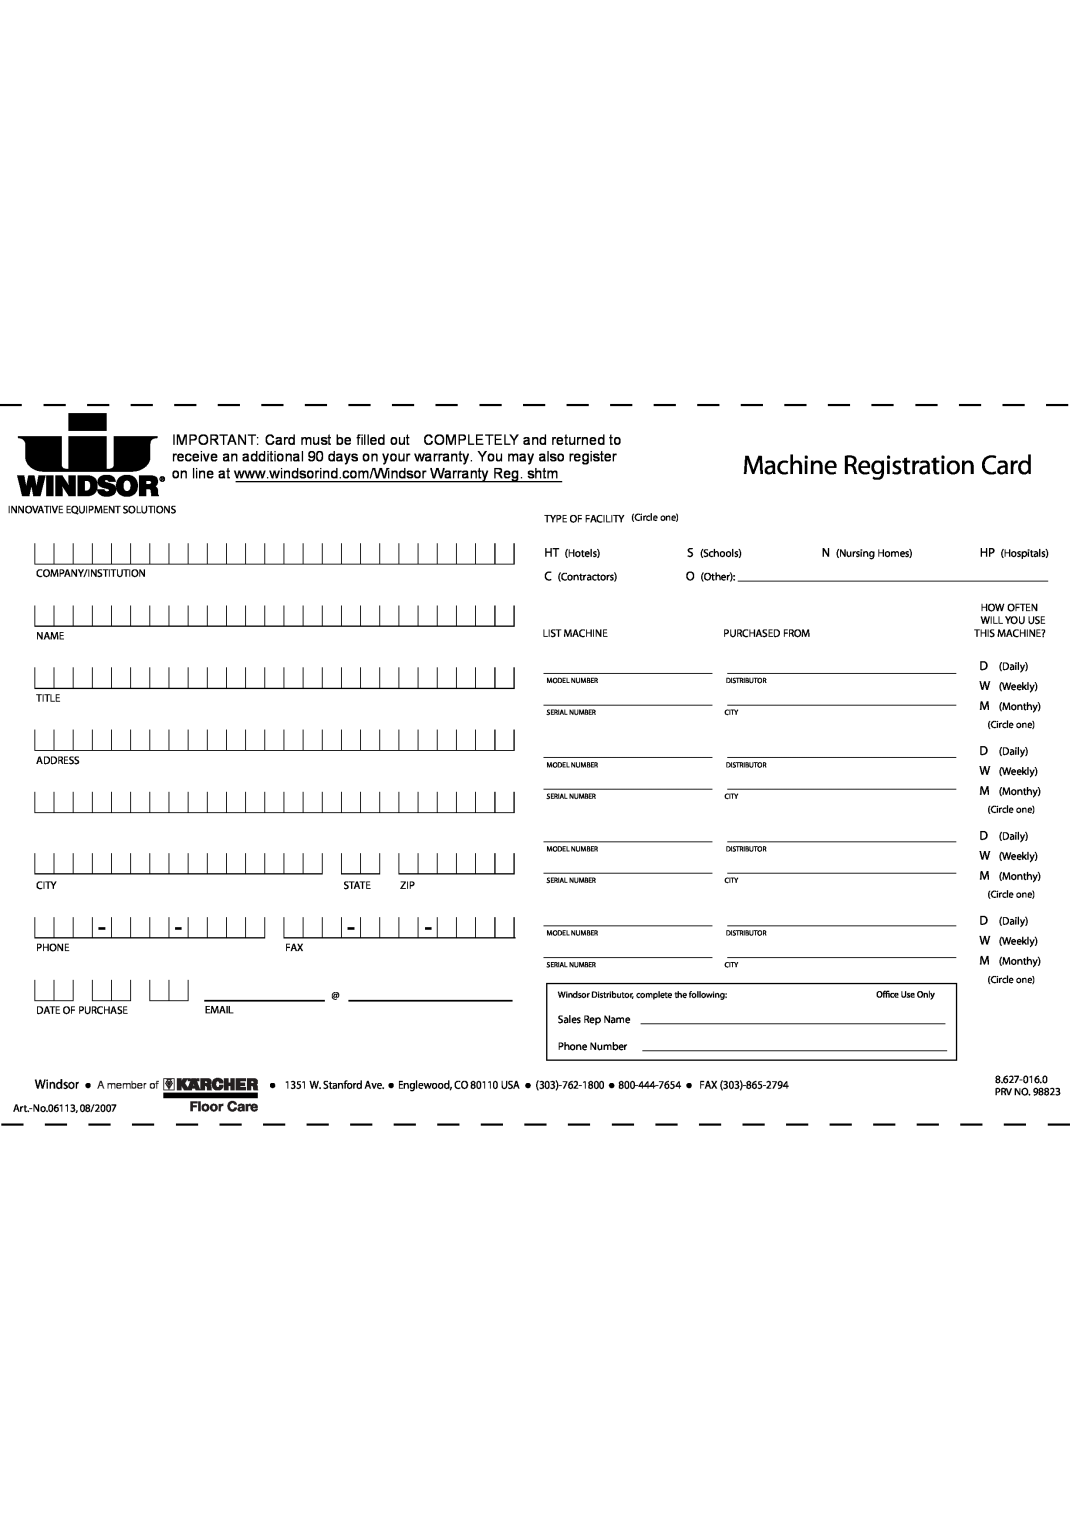 Windsor 10120220, SRS15 manual Machine Registration Card, Windsor, A member of 